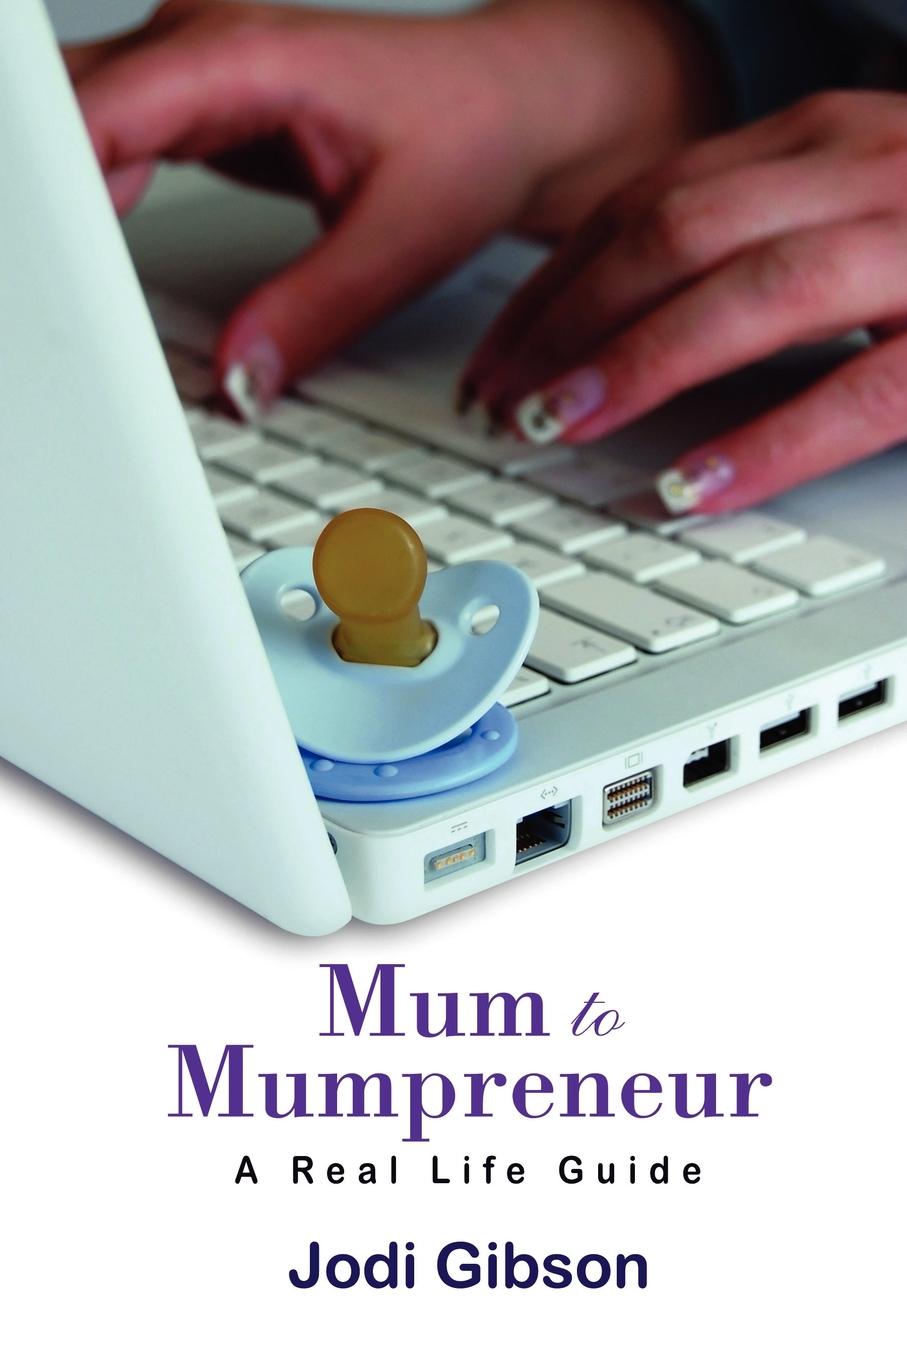 Mum to Mumpreneur - A Real Life Guide